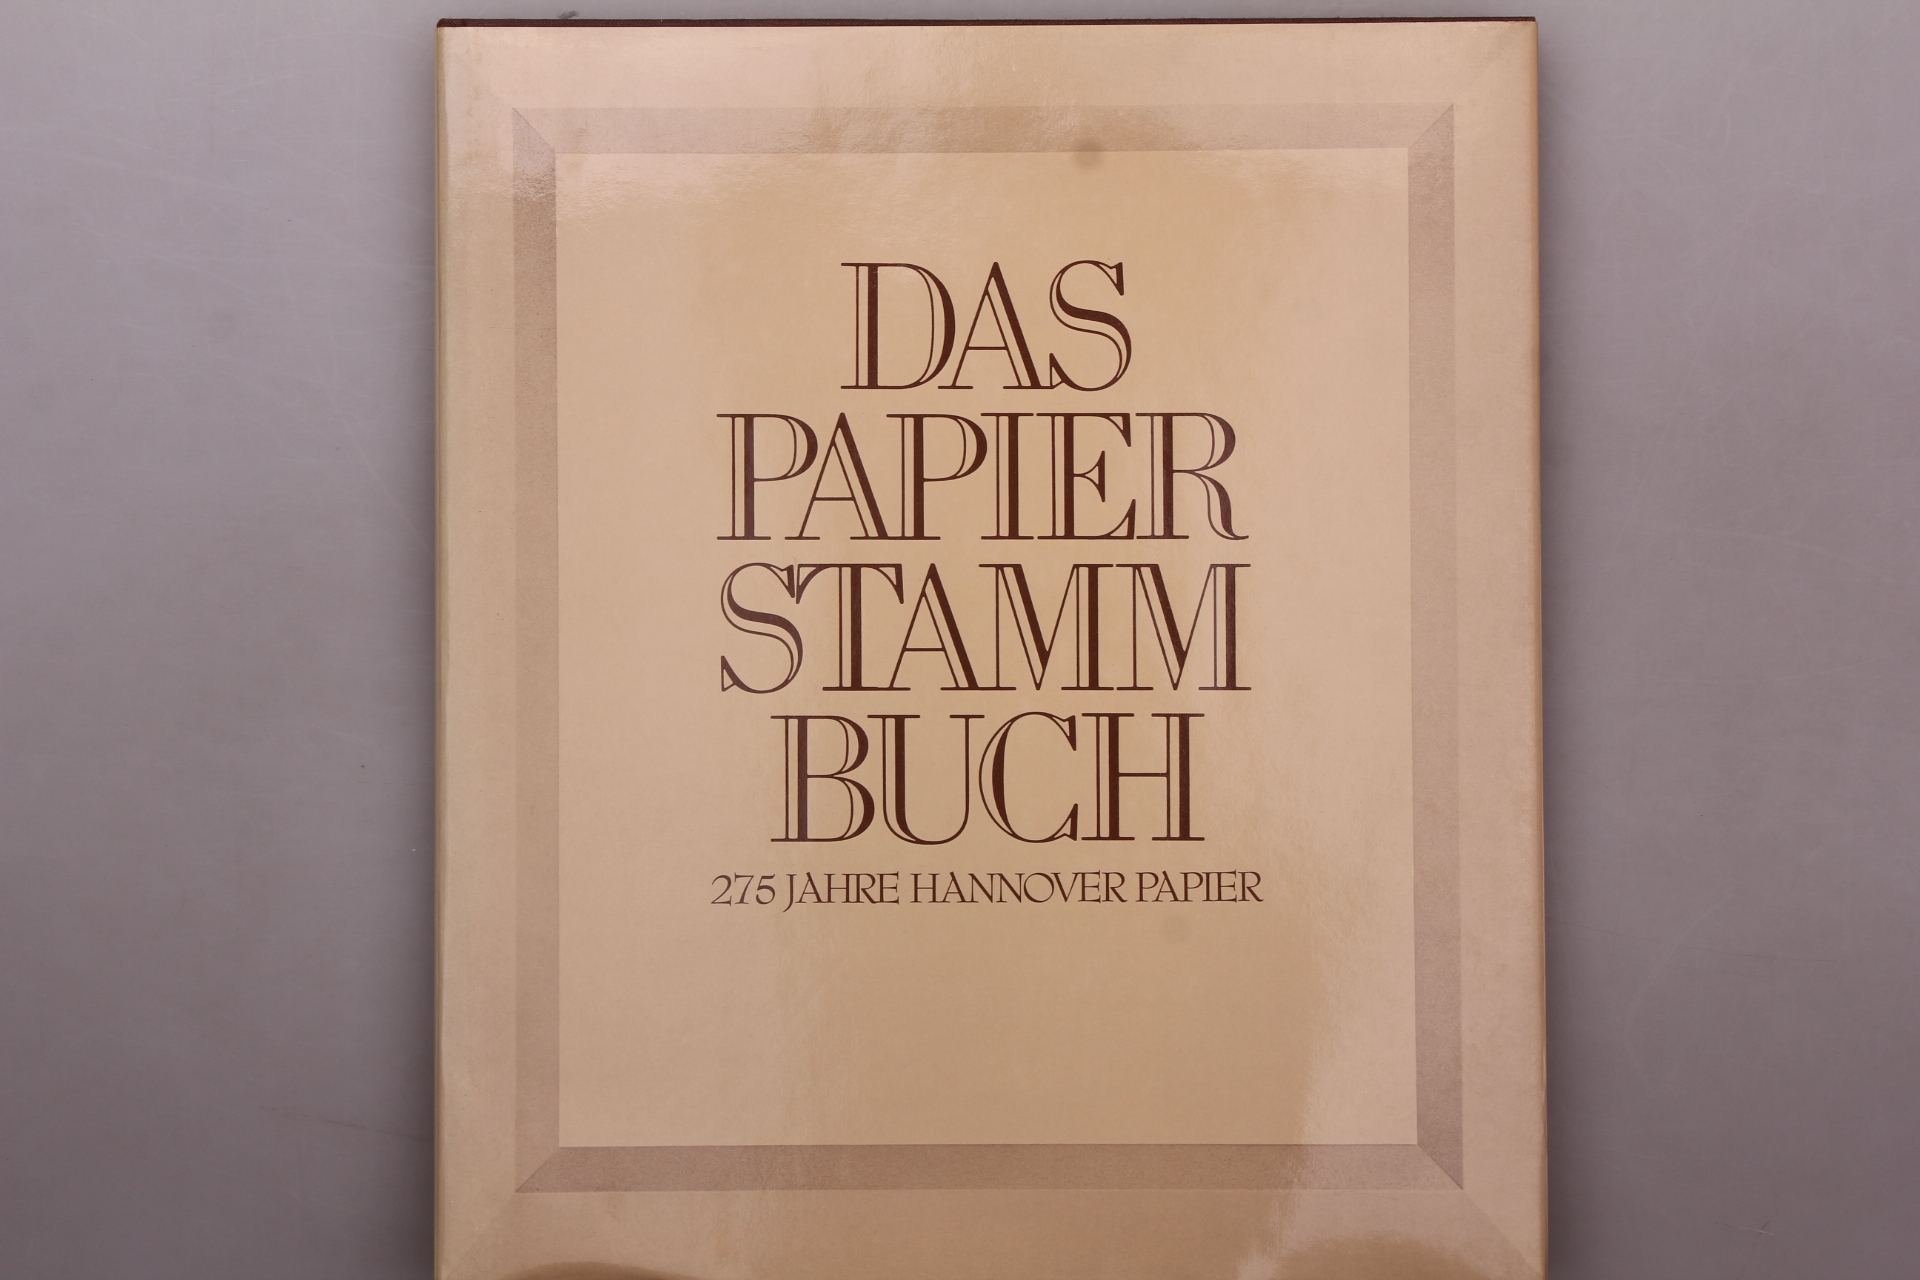 DAS PAPIERSTAMMBUCH. 275 Jahre Hannover Papier - Hanke, Manfred; [Hrsg.]: Hannoversche Papierfabriken Alfeld-Gronau